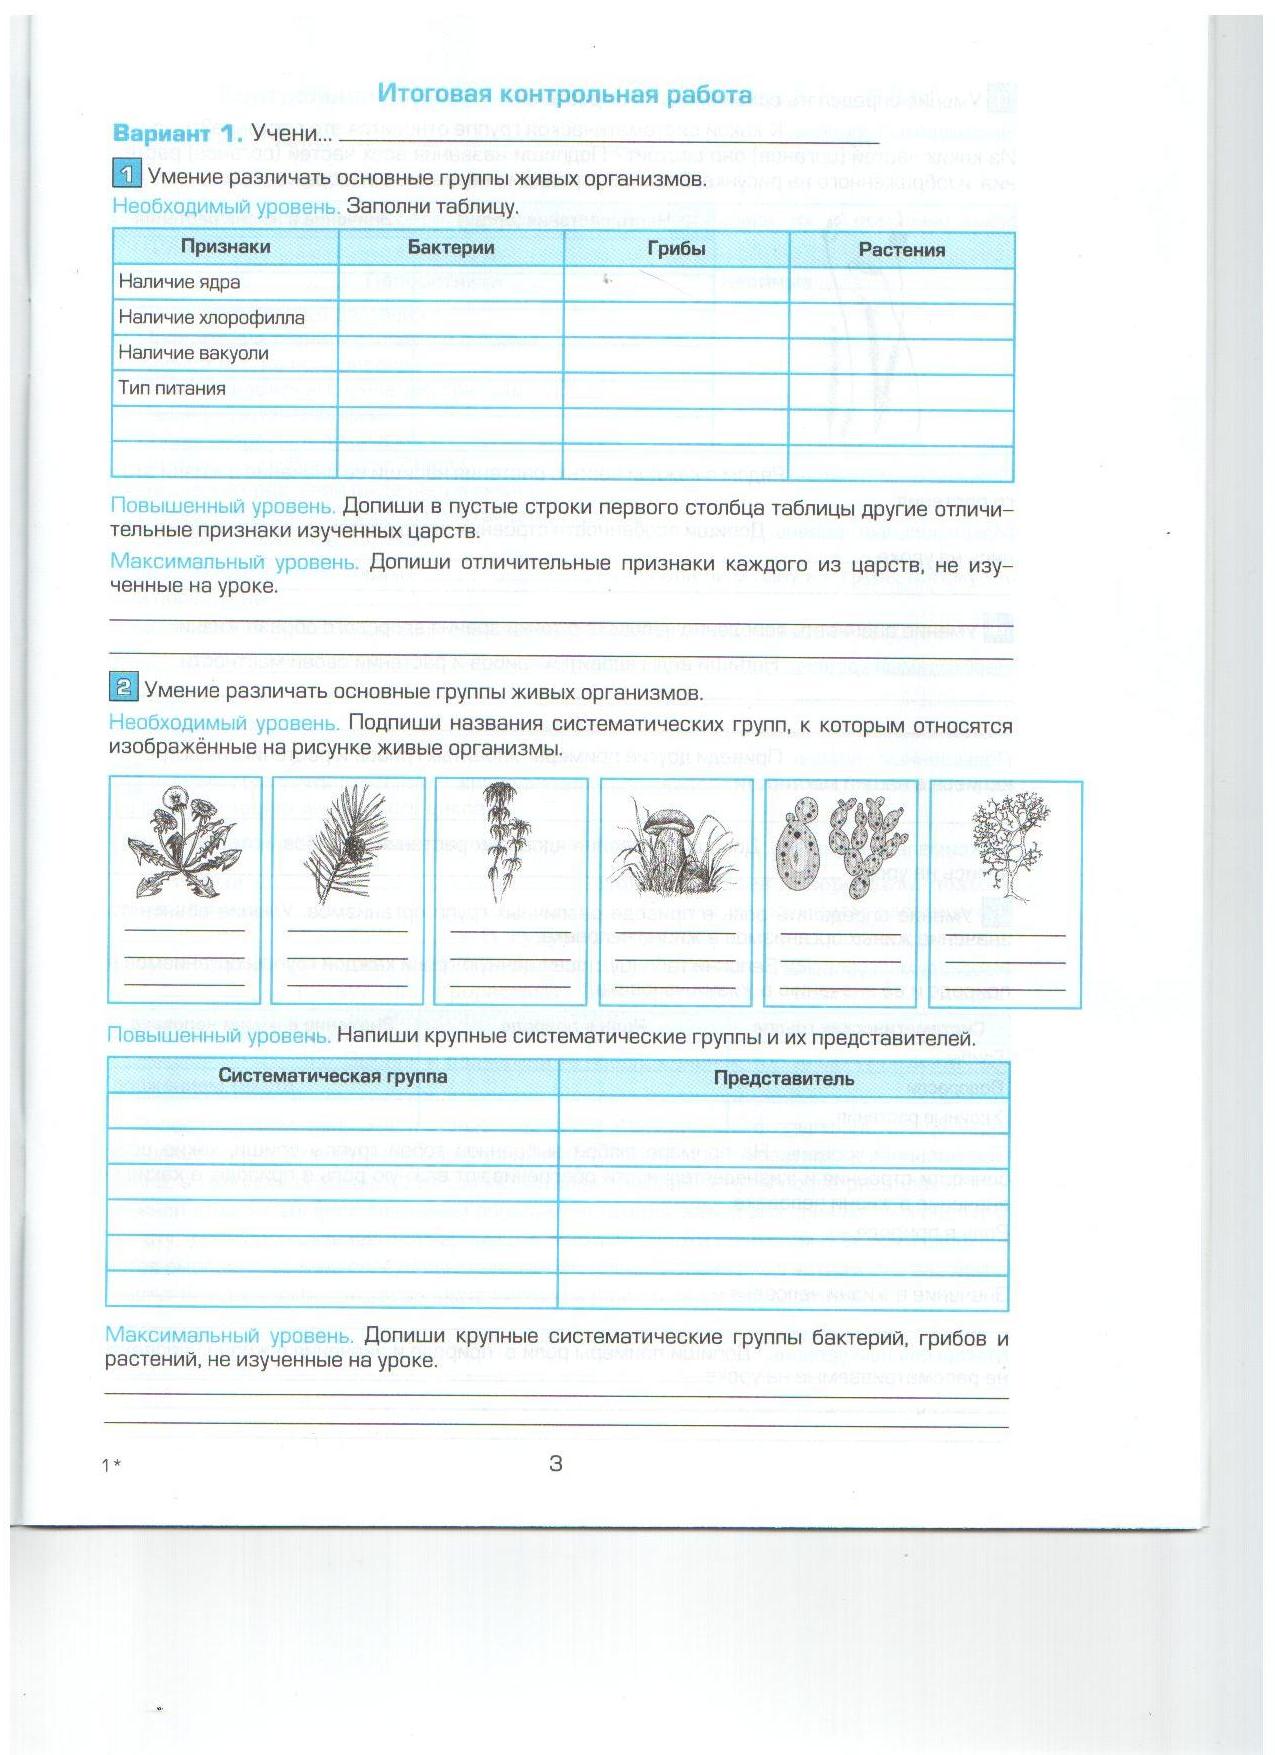 Рабочая программа по биологии, 5 класс, УМК авторов Пономаревой И.Н. и др.